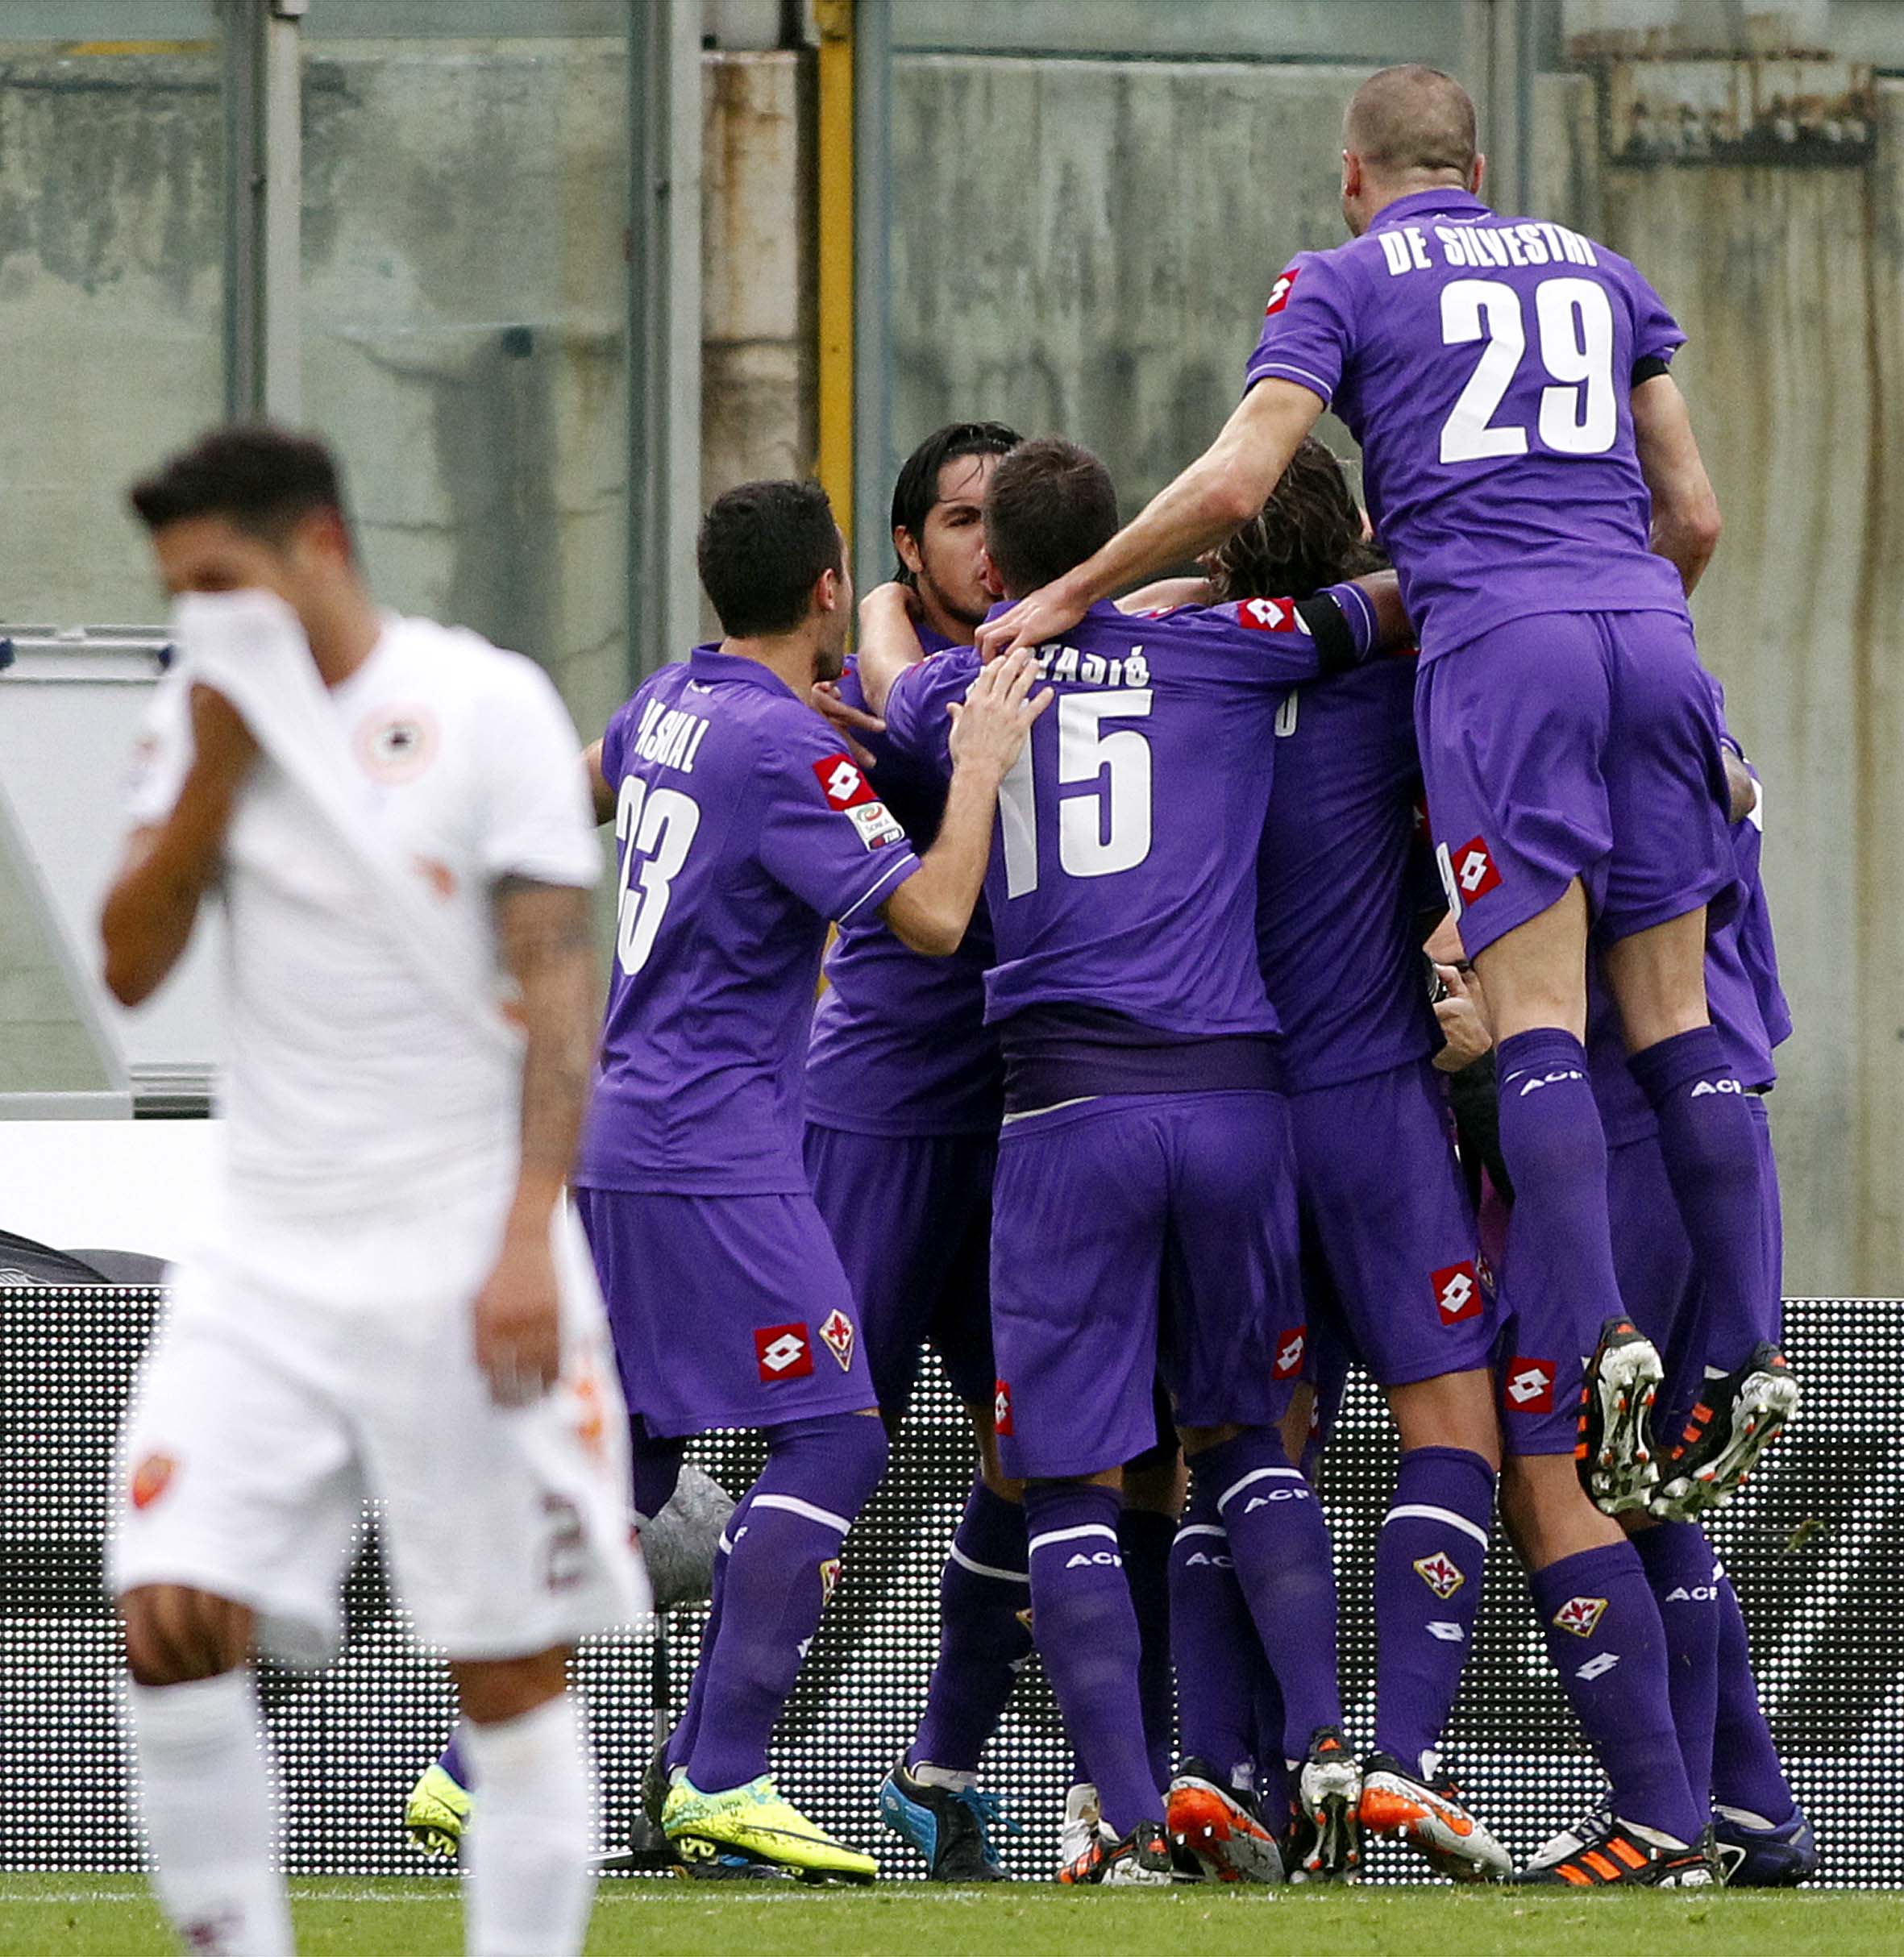 Romas kräftgång fortsätter. Mot Fiorentina kom lagets sjätte förlust.